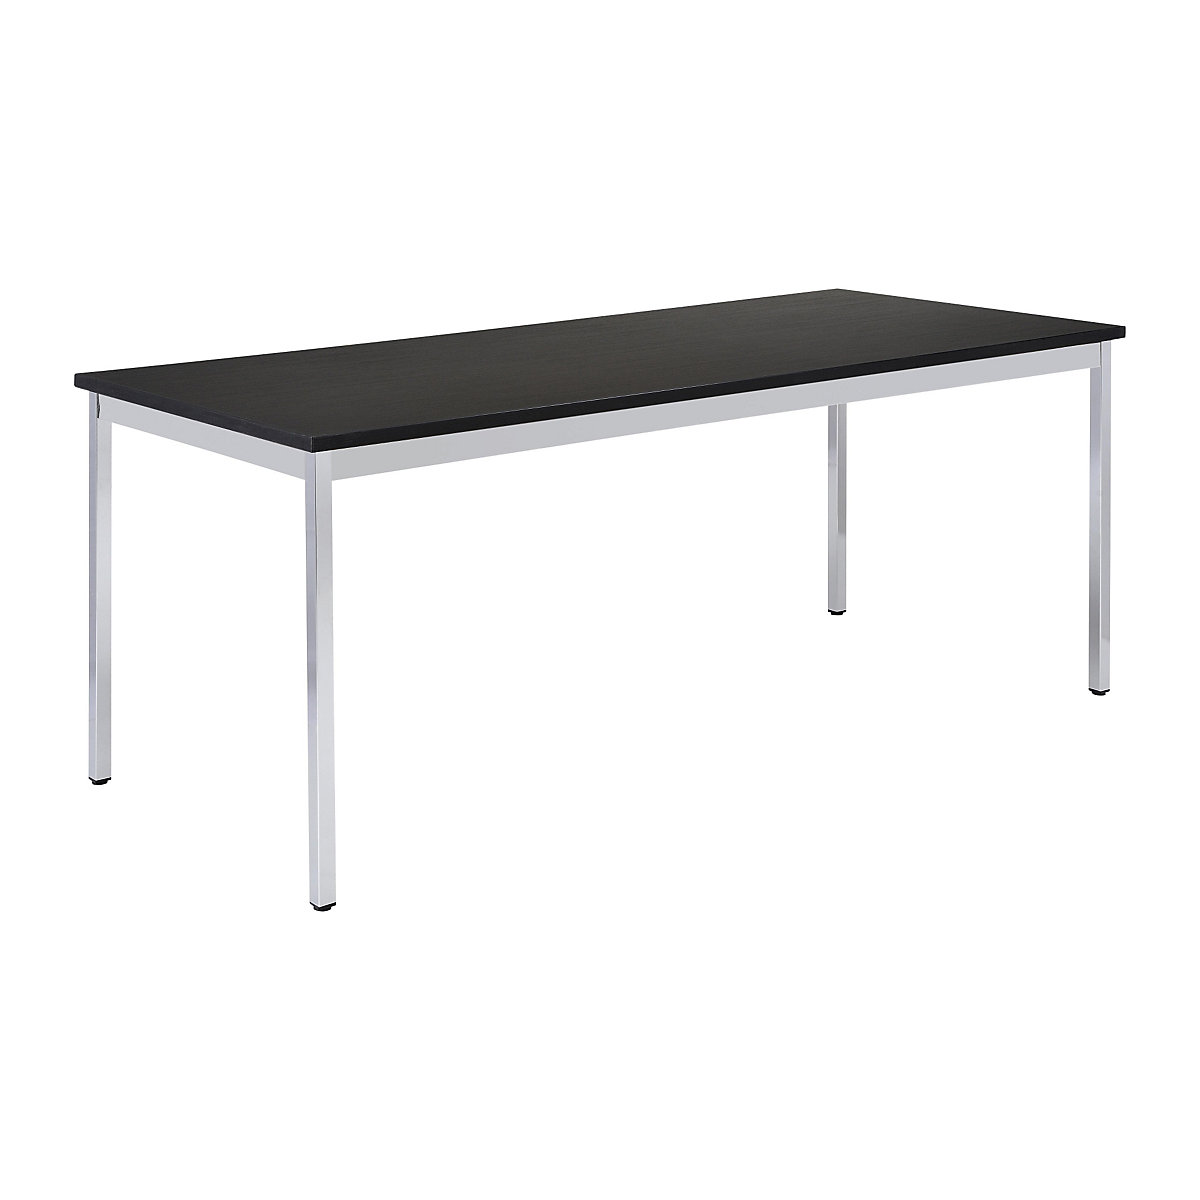 Table polyvalente – eurokraft basic, rectangulaire, l x h 1400 x 740 mm, profondeur 700 mm, plateau noir, piétement chromé-16